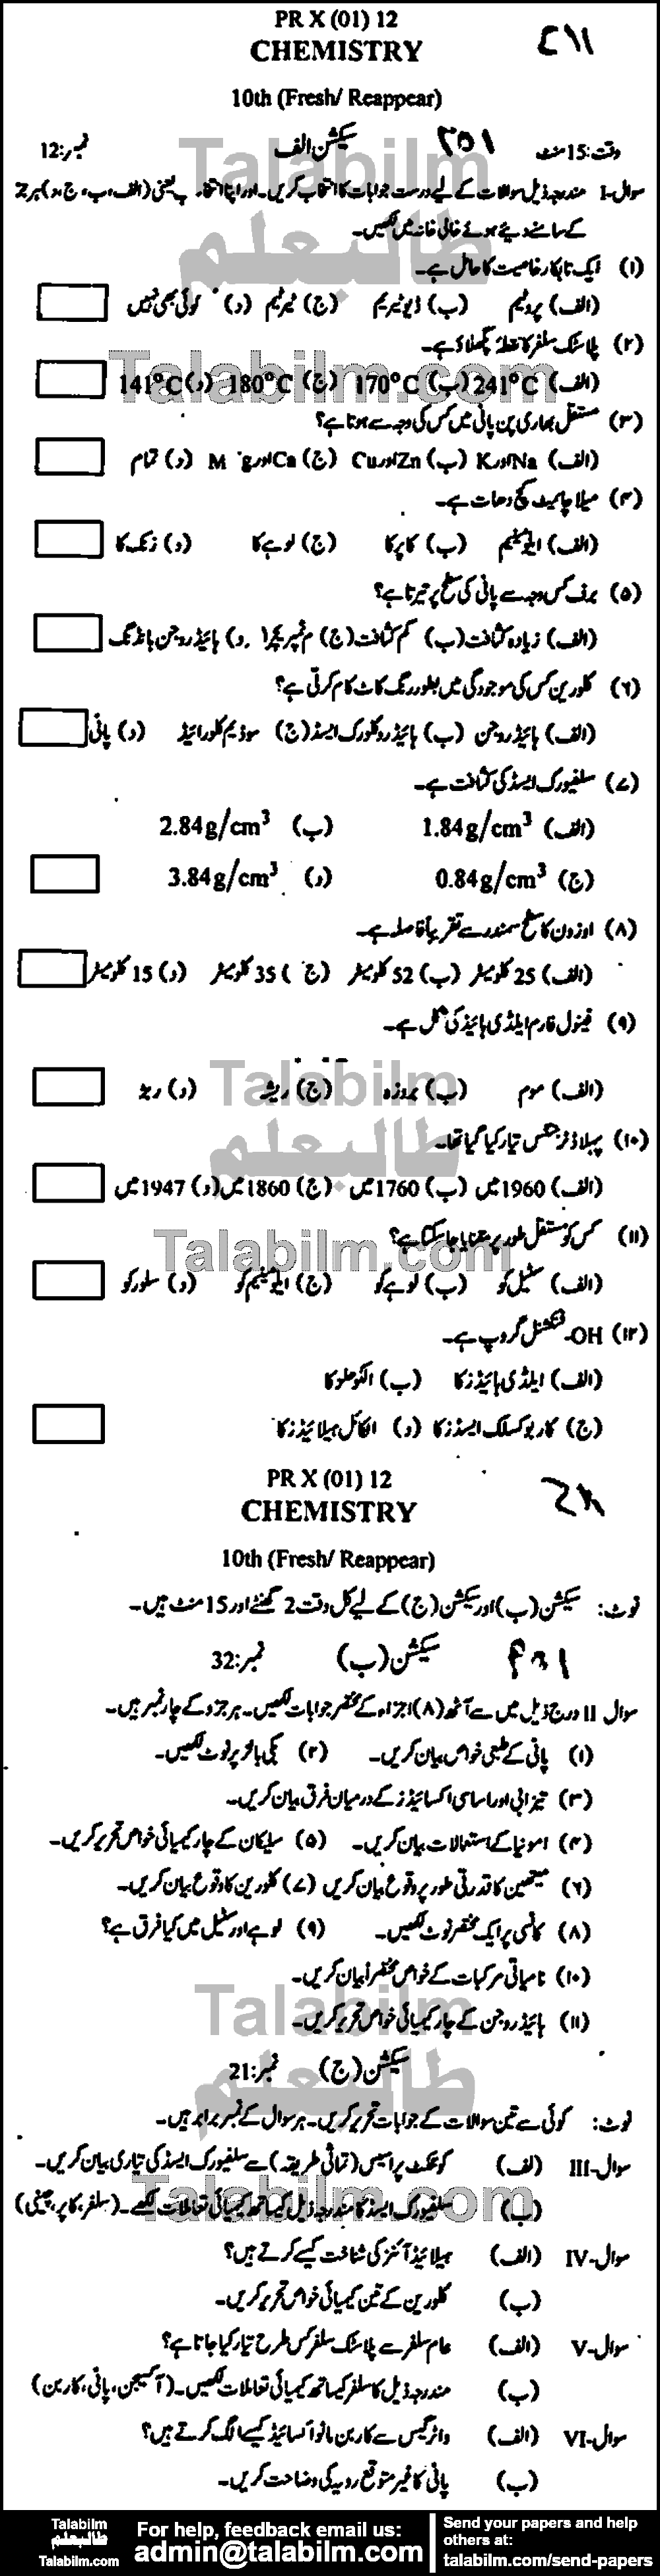 Chemistry 0 past paper for Urdu Medium 2012 Group-I